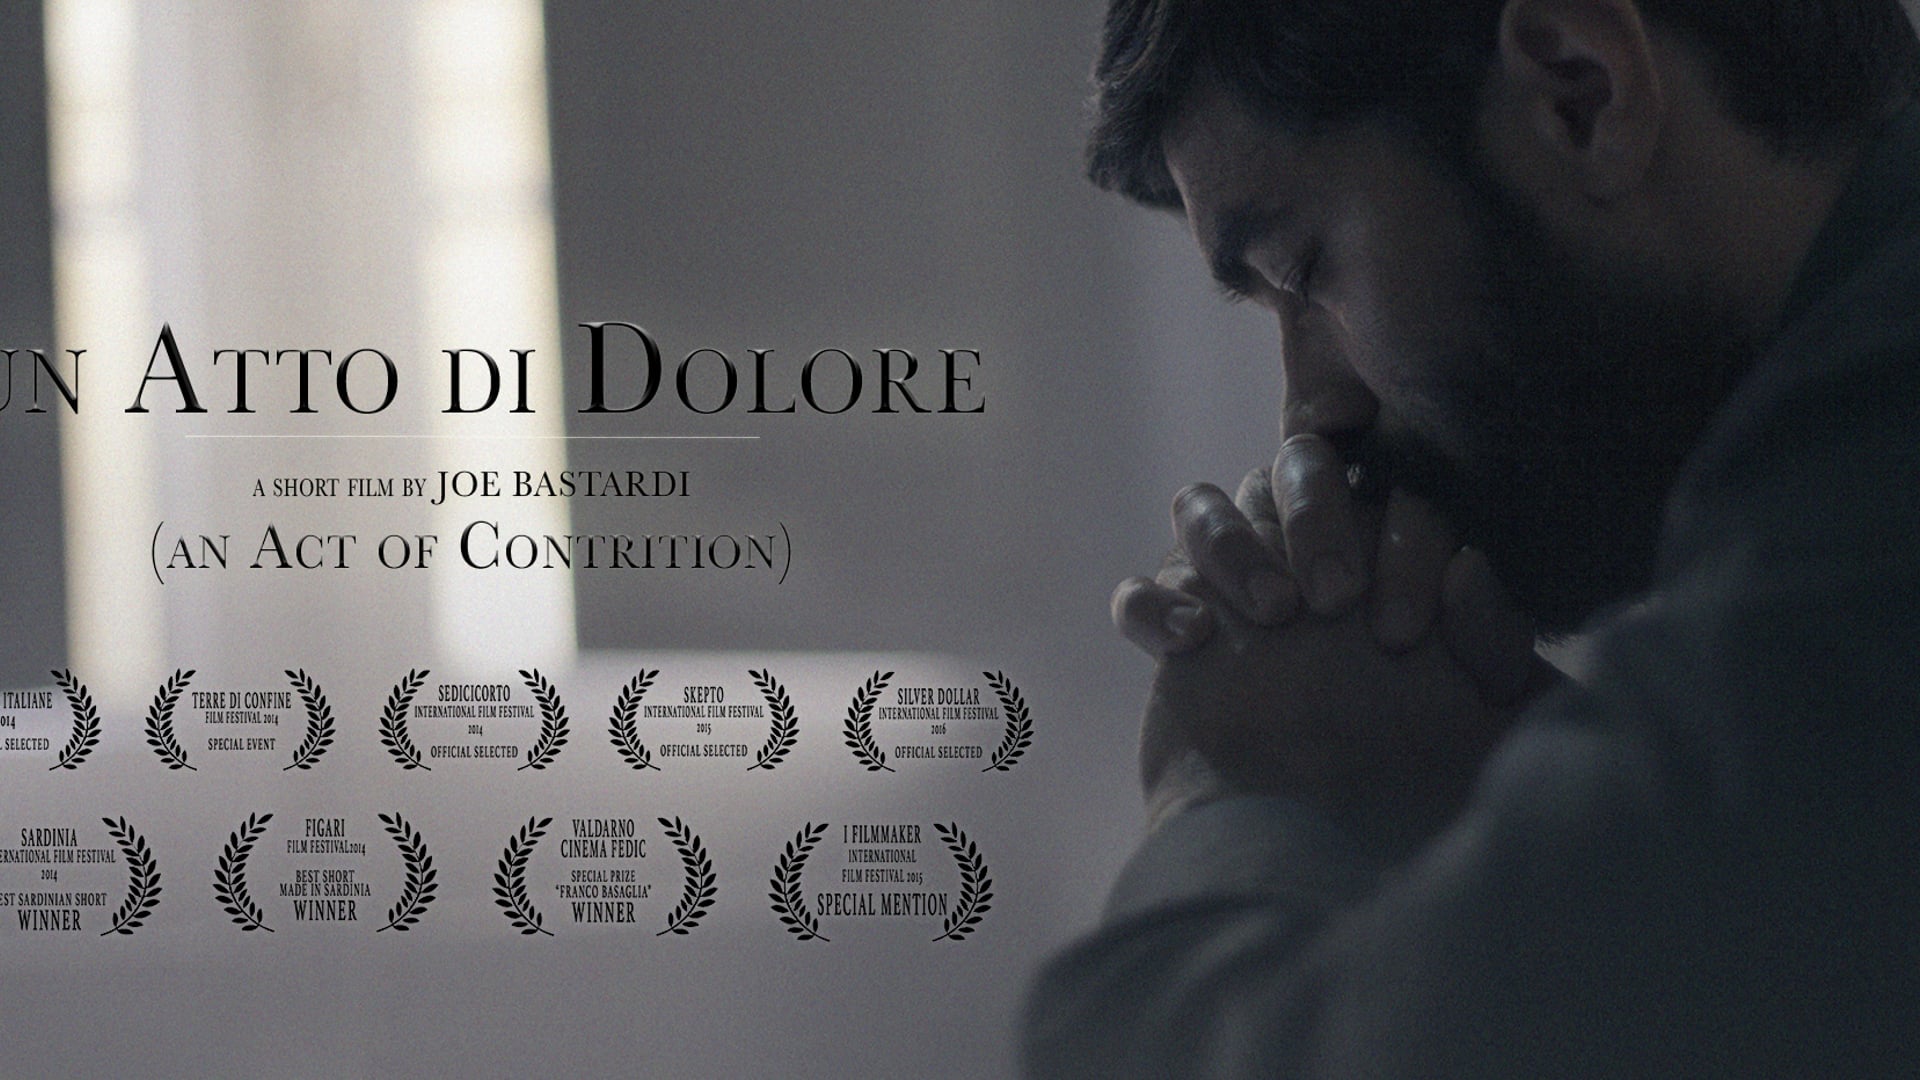 UN ATTO DI DOLORE (An Act of Contrition) - Short film about pedophilia in the Catholic Church